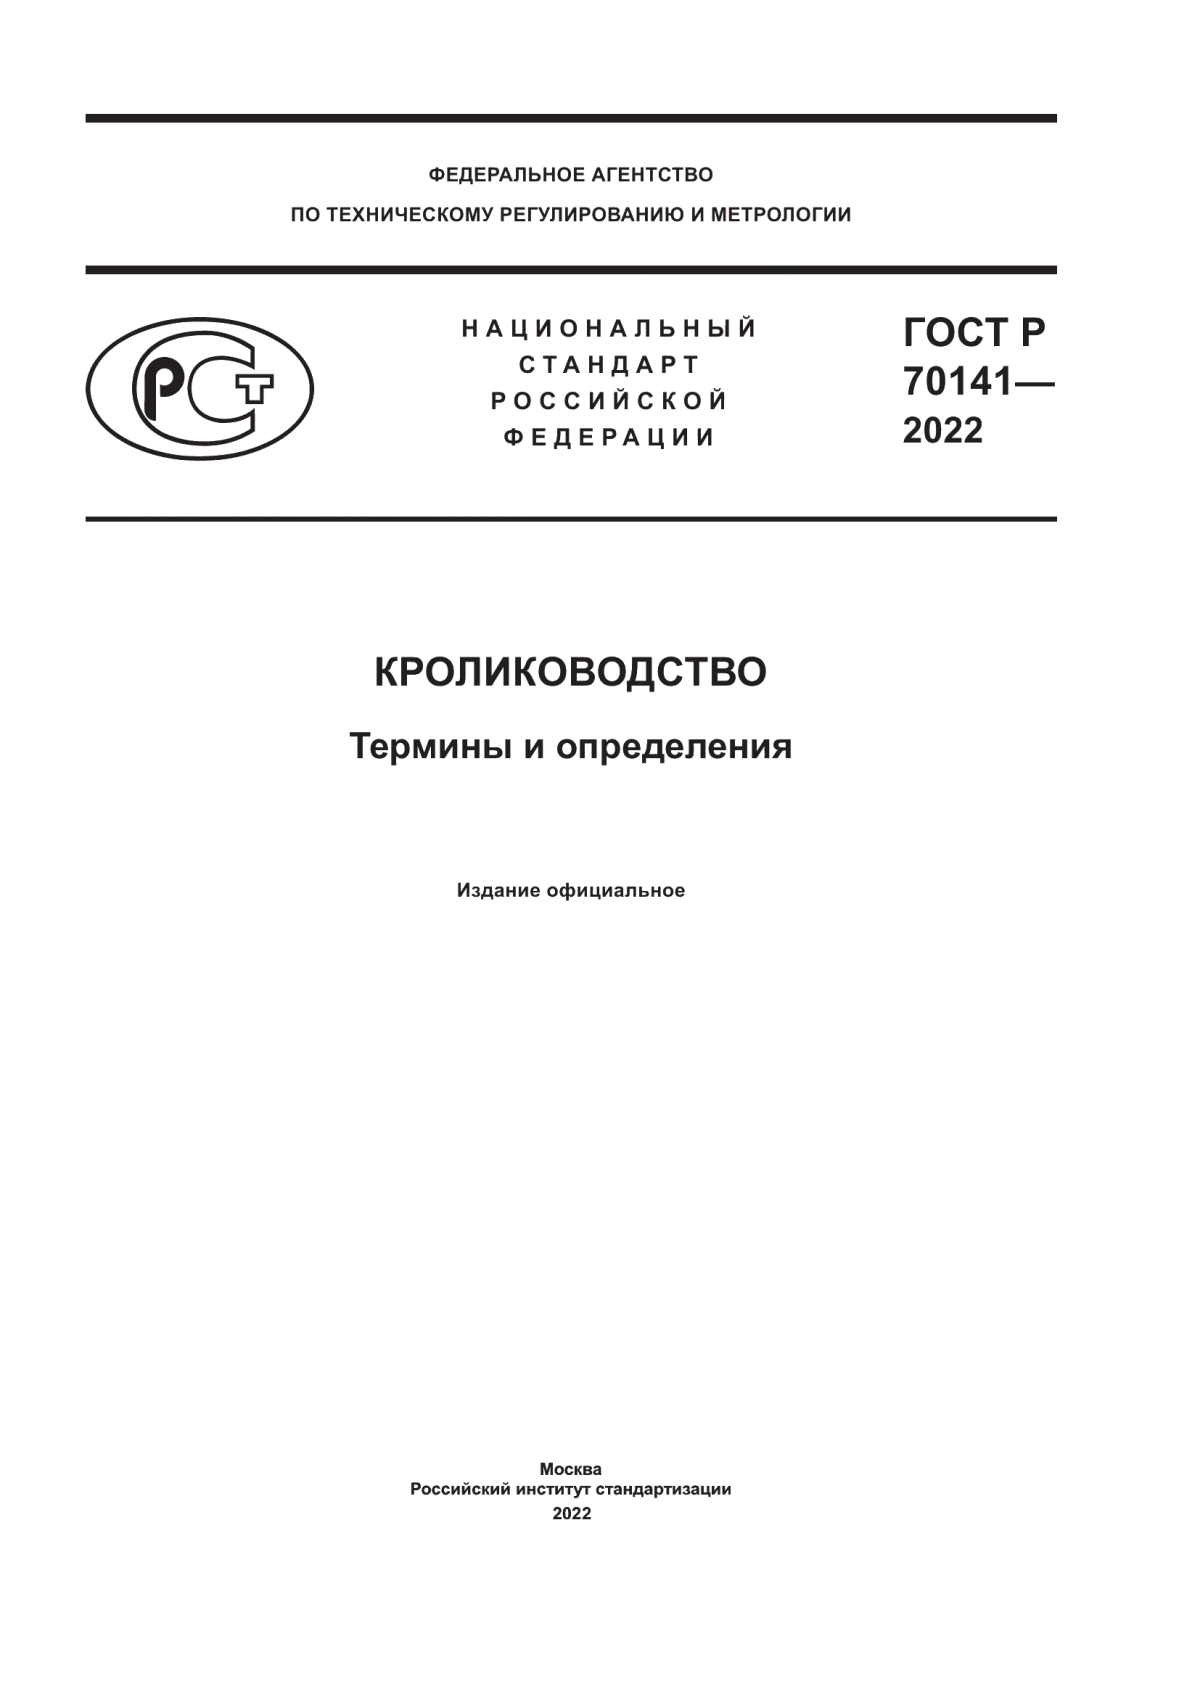 ГОСТ Р 70141-2022 Кролиководство. Термины и определения